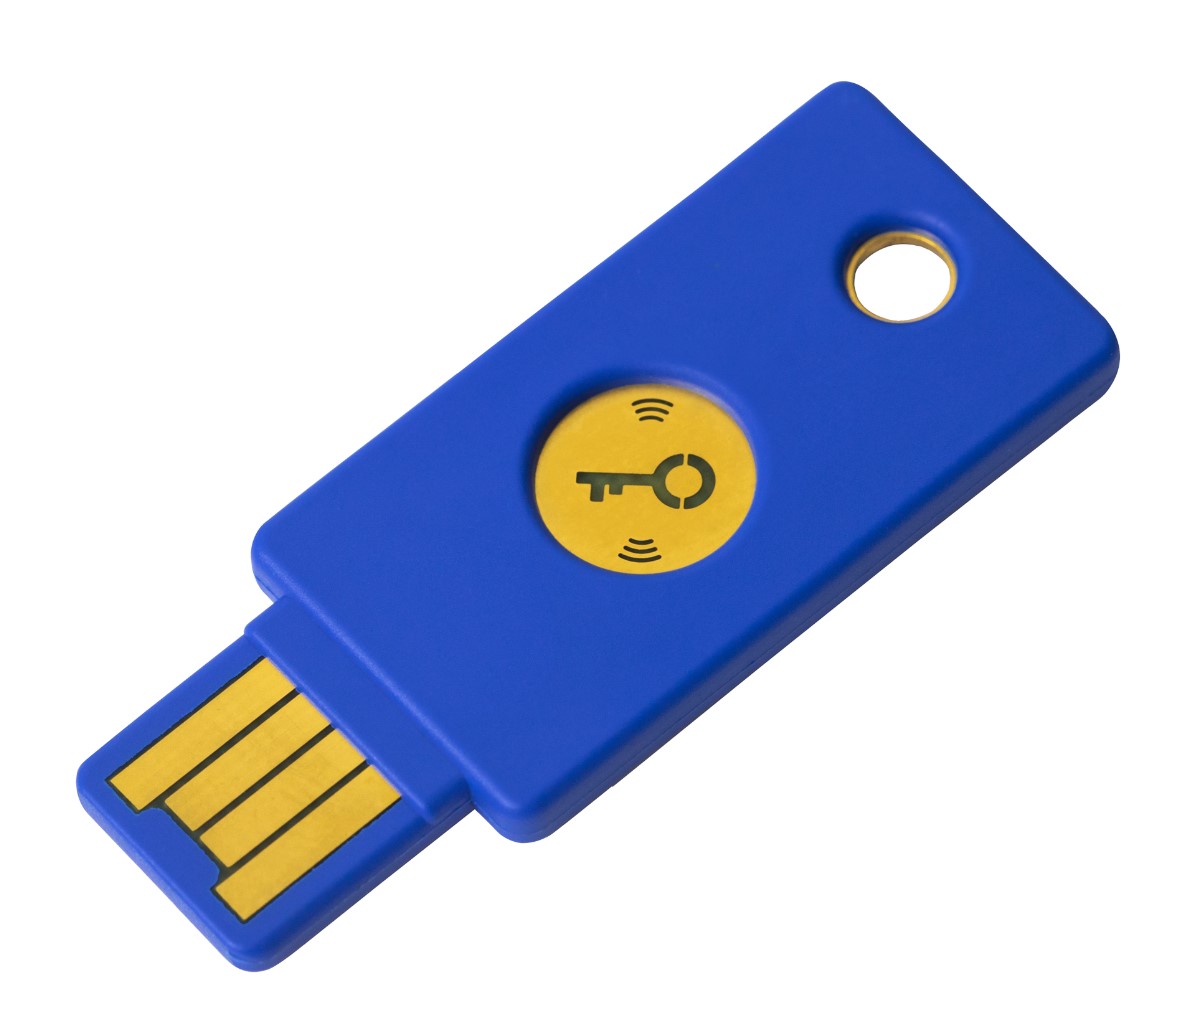 Yubico U2F Security Key